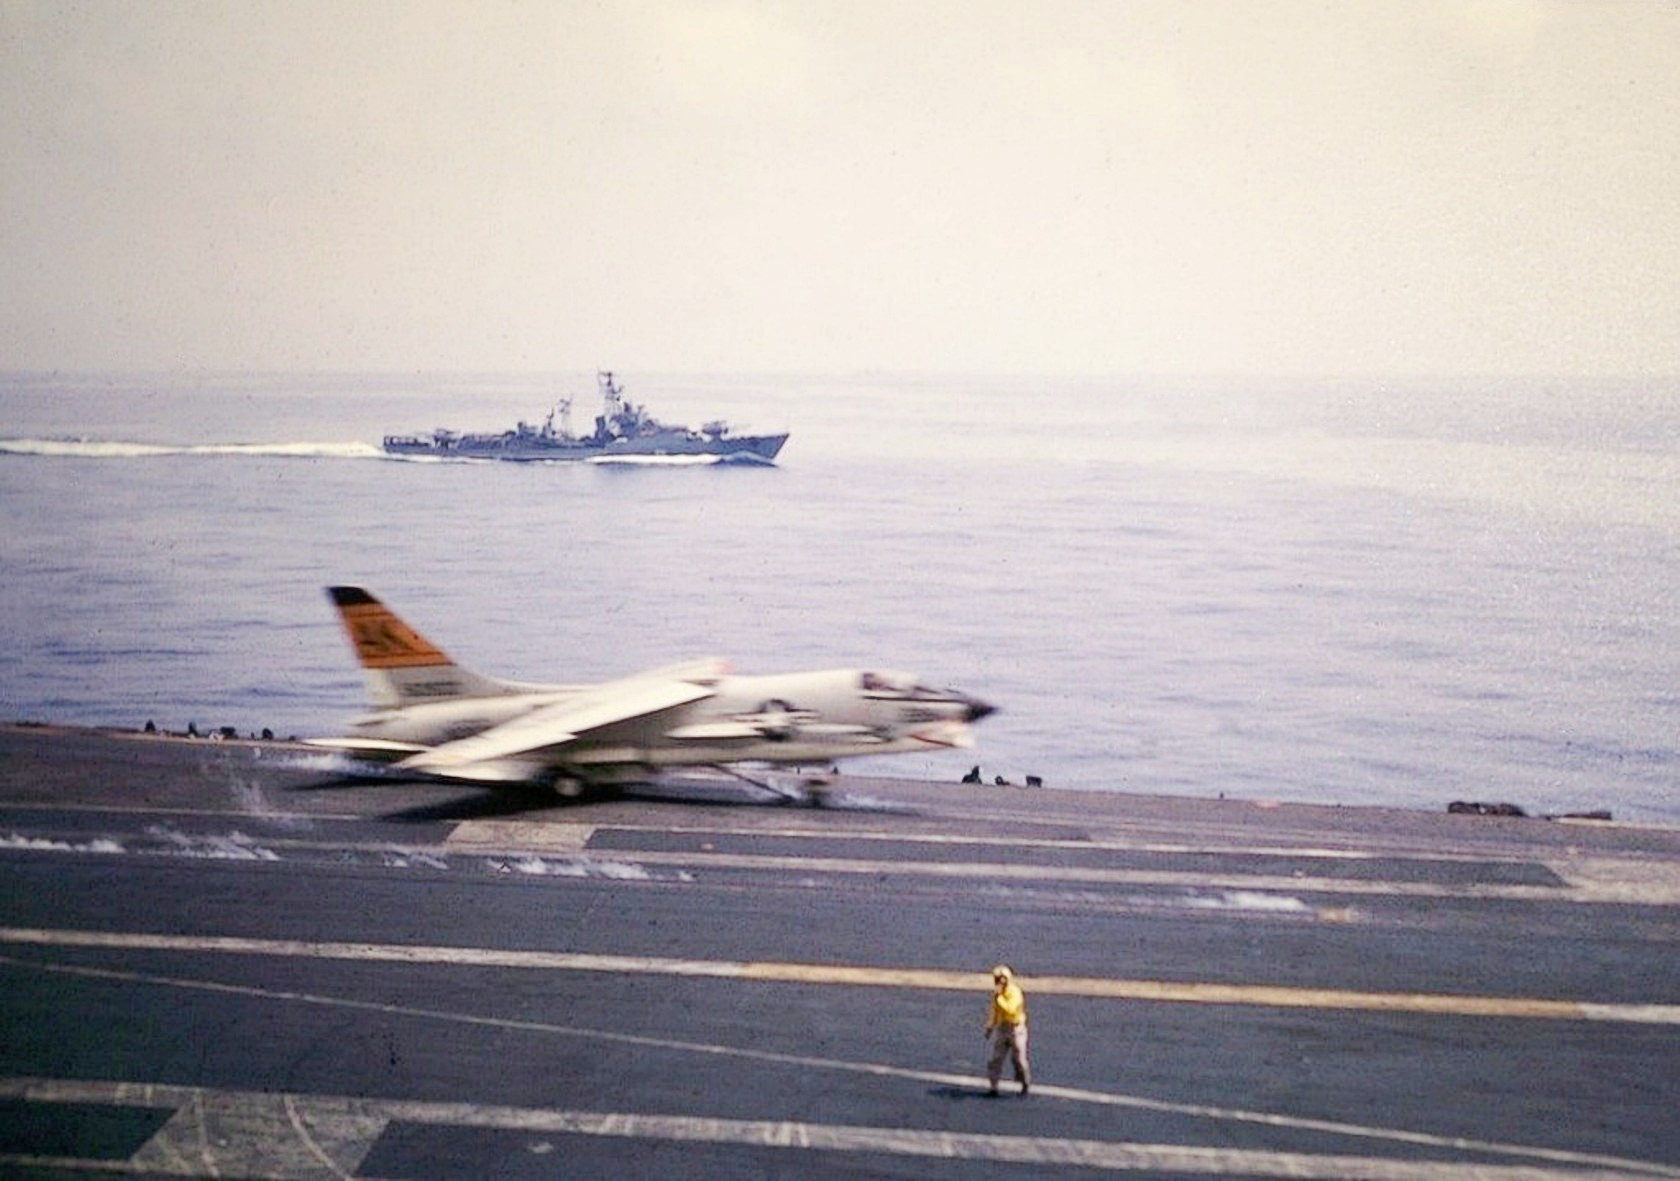 Фото снято с авианосца Саратога апрель 1965 Средиземное море2.jpg